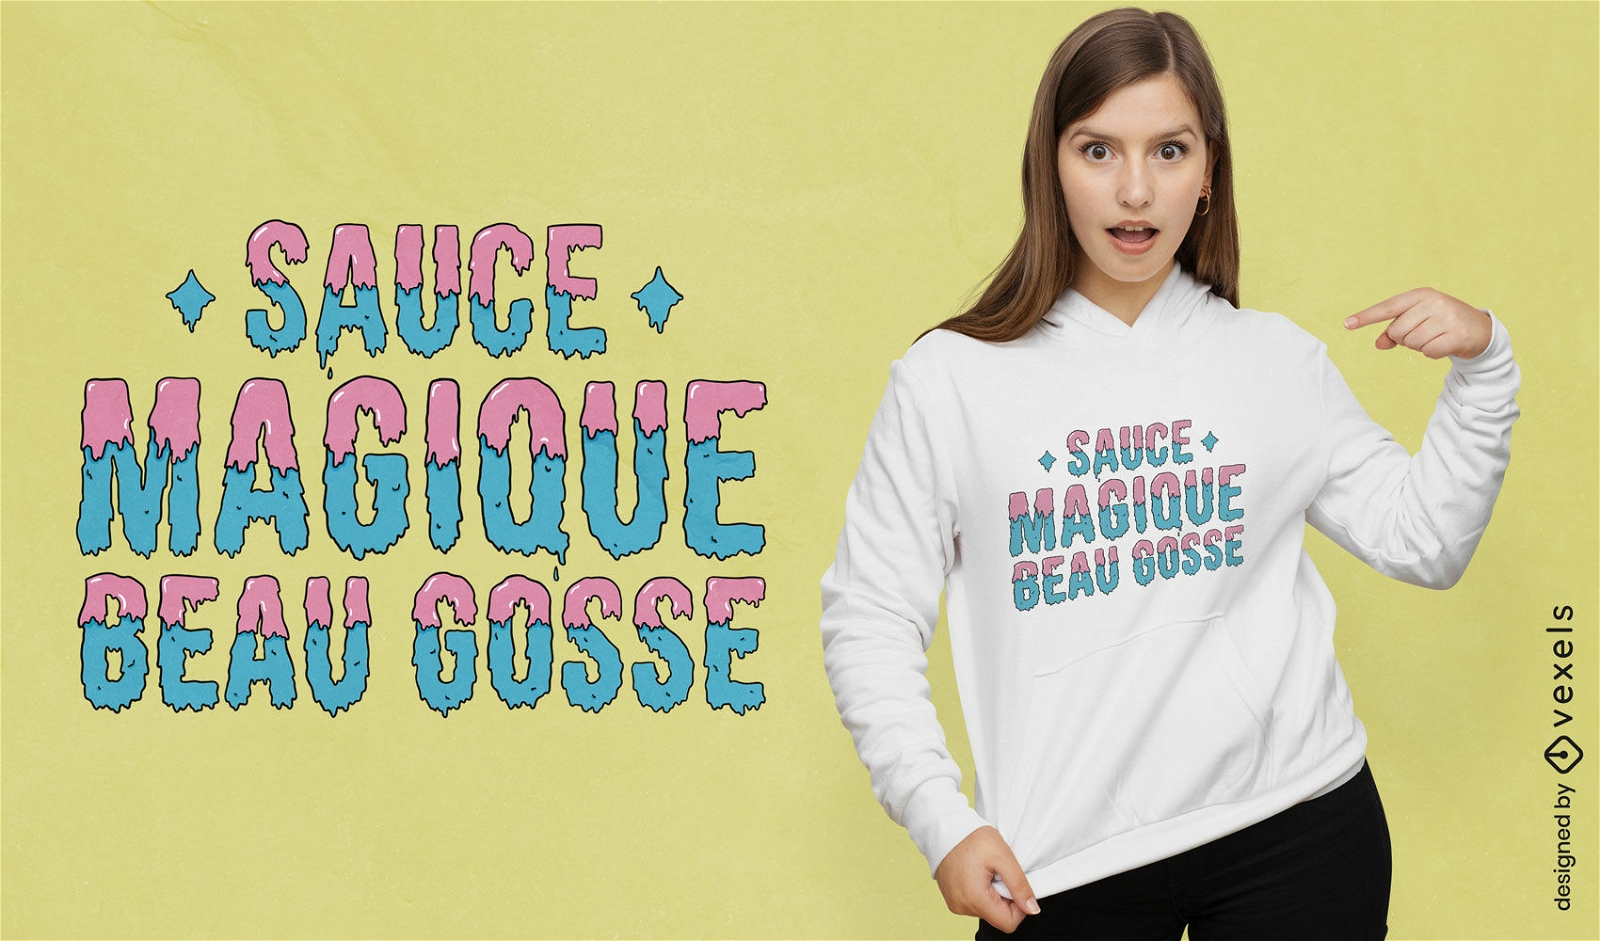 Lustiges und grooviges französisches Zitat-T-Shirt-Design